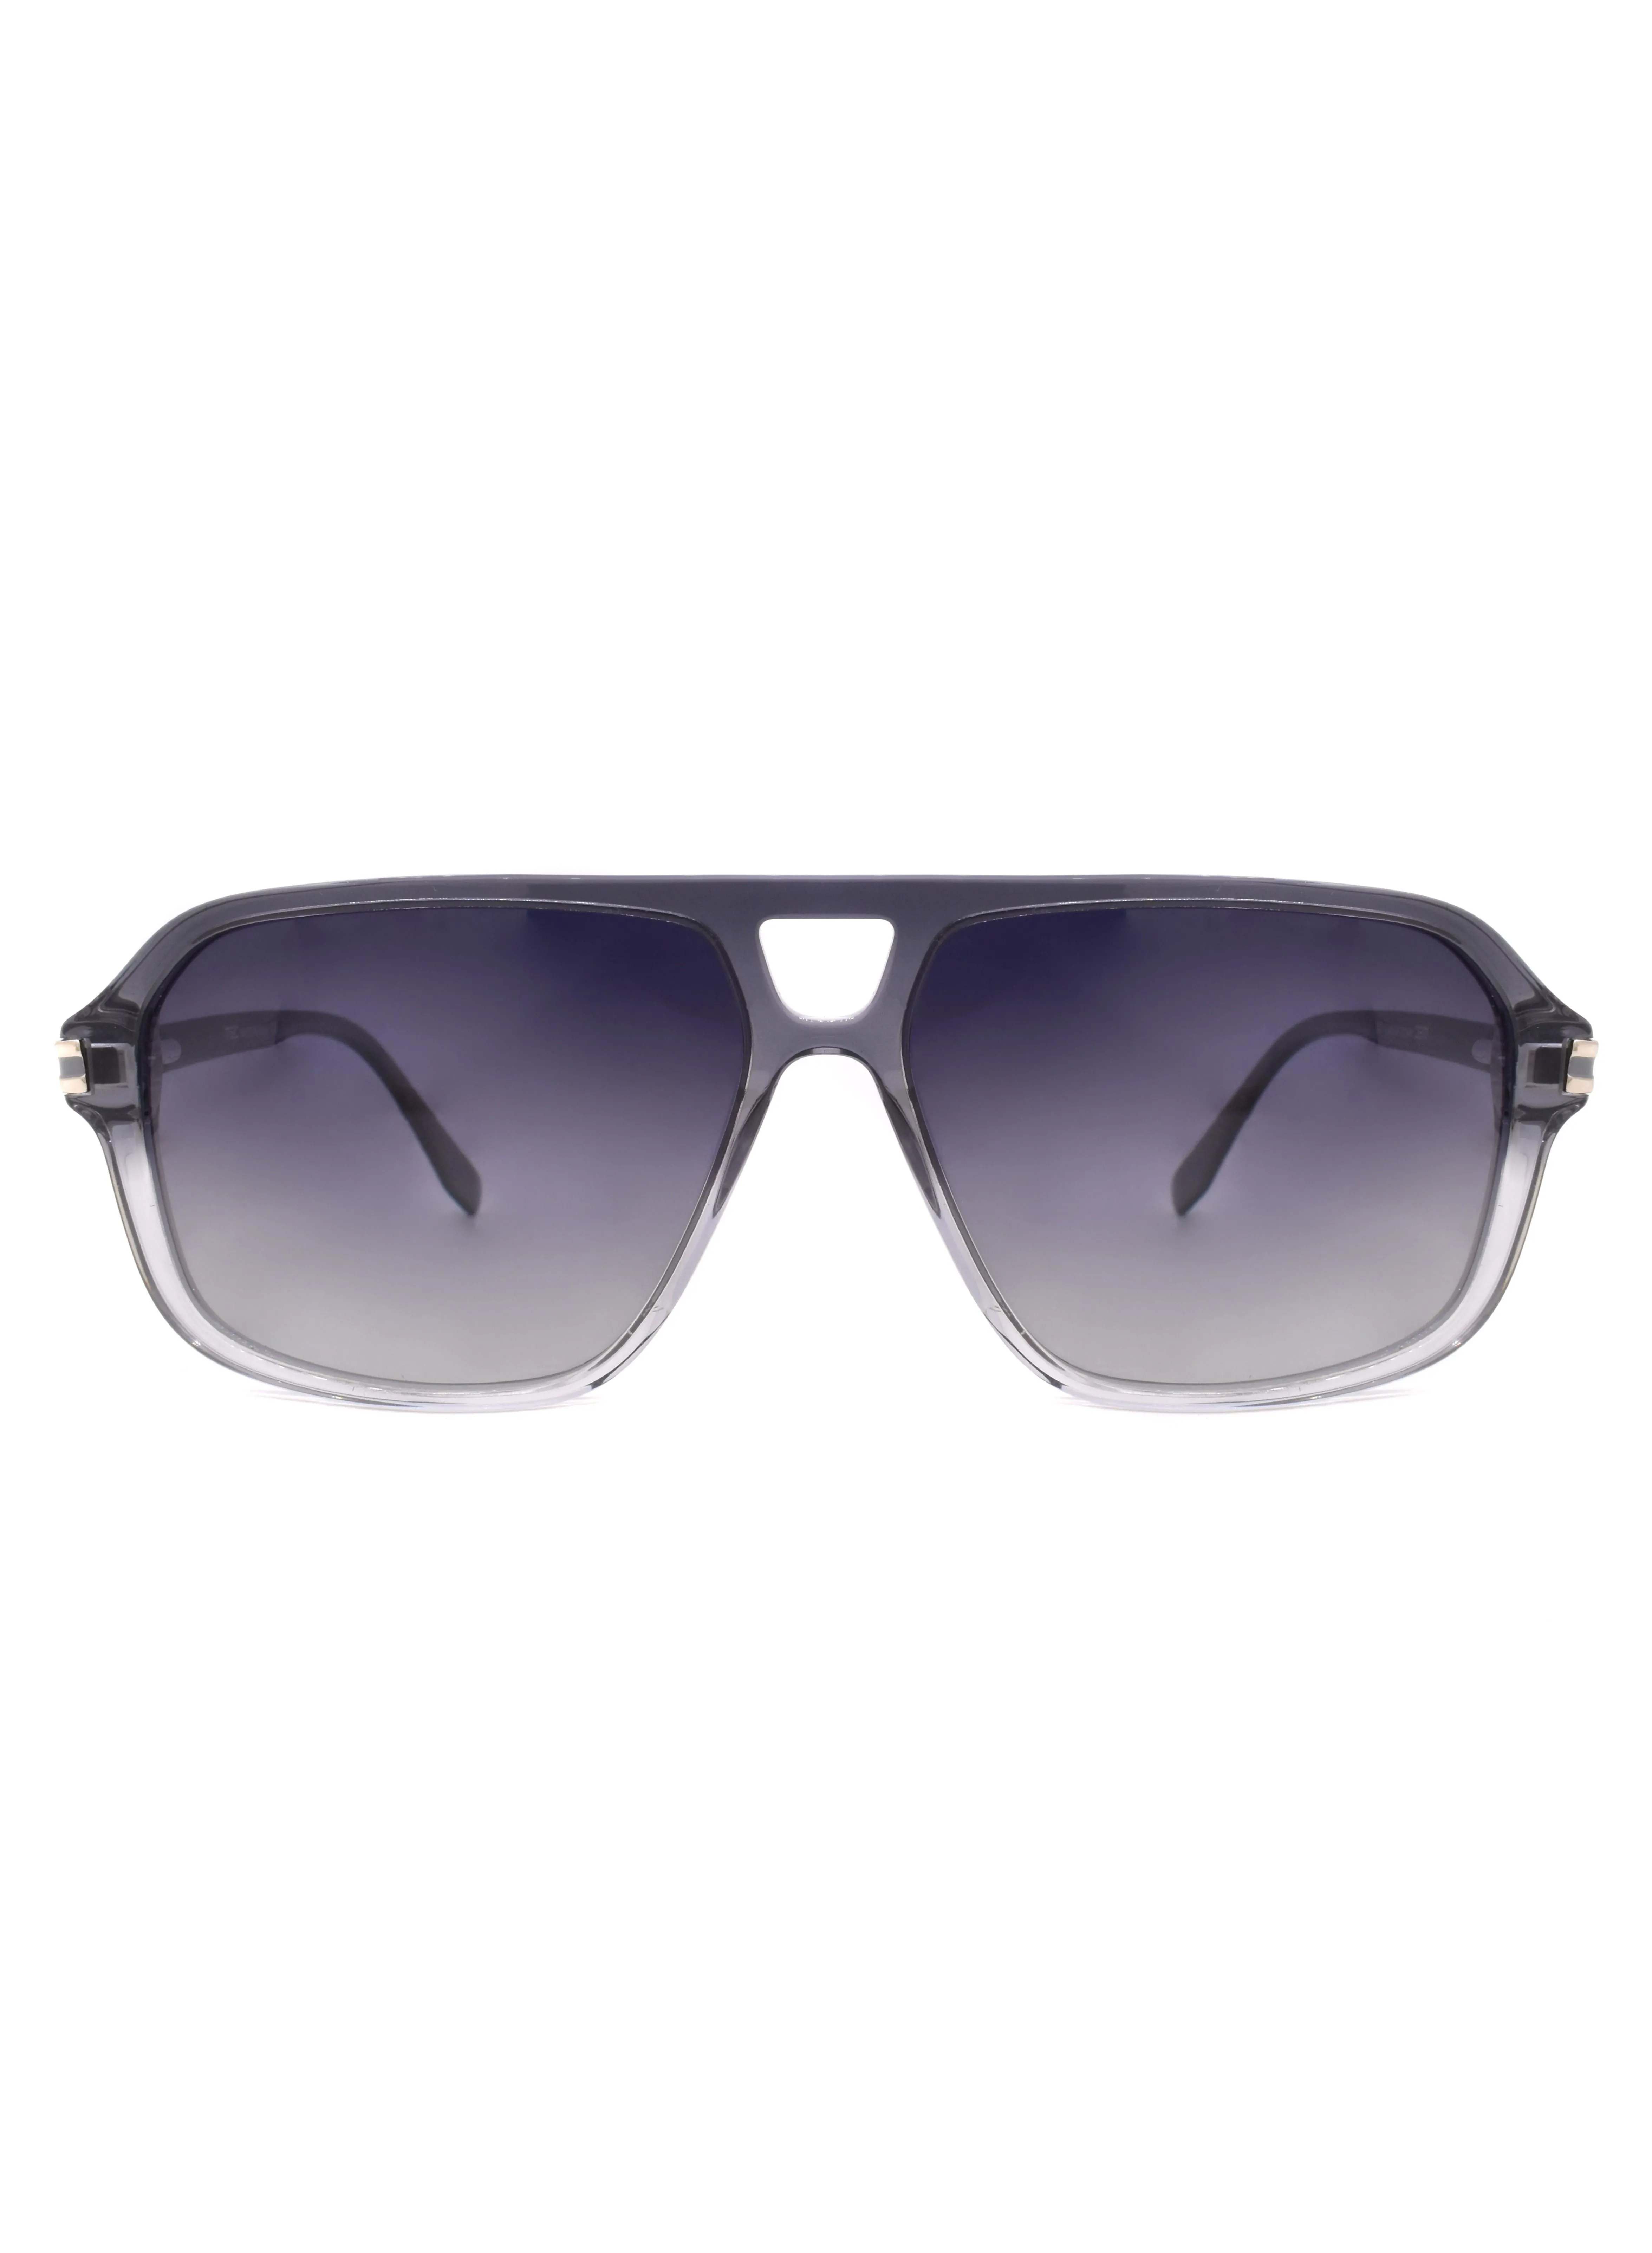 MEC Full Rim Square Sunglasses with Nose Pads 89965-C3